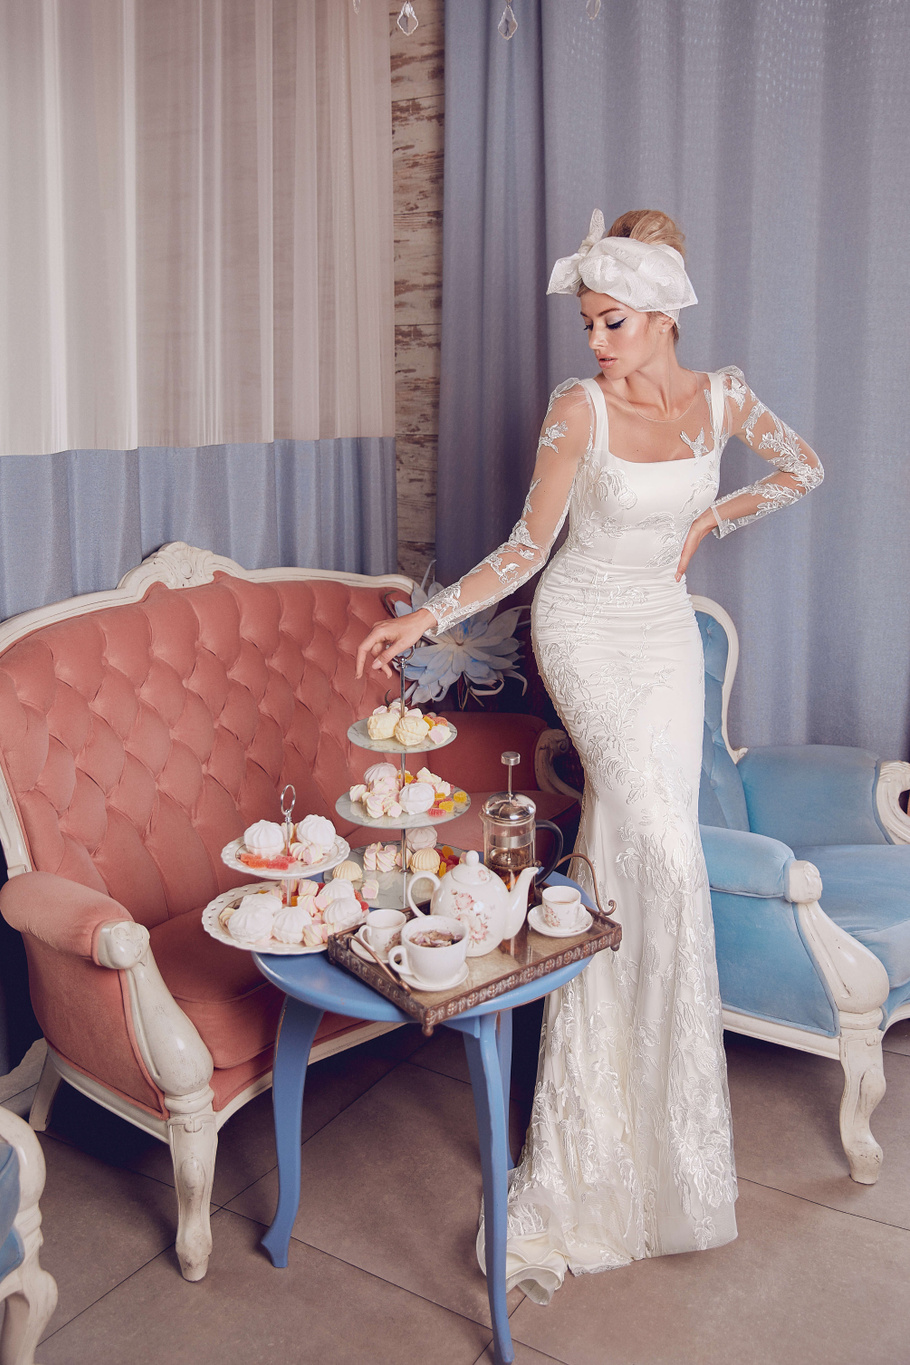 Купить свадебное платье «Кассандра» Бламмо Биамо из коллекции Свит Лайф 2021 года в Казани